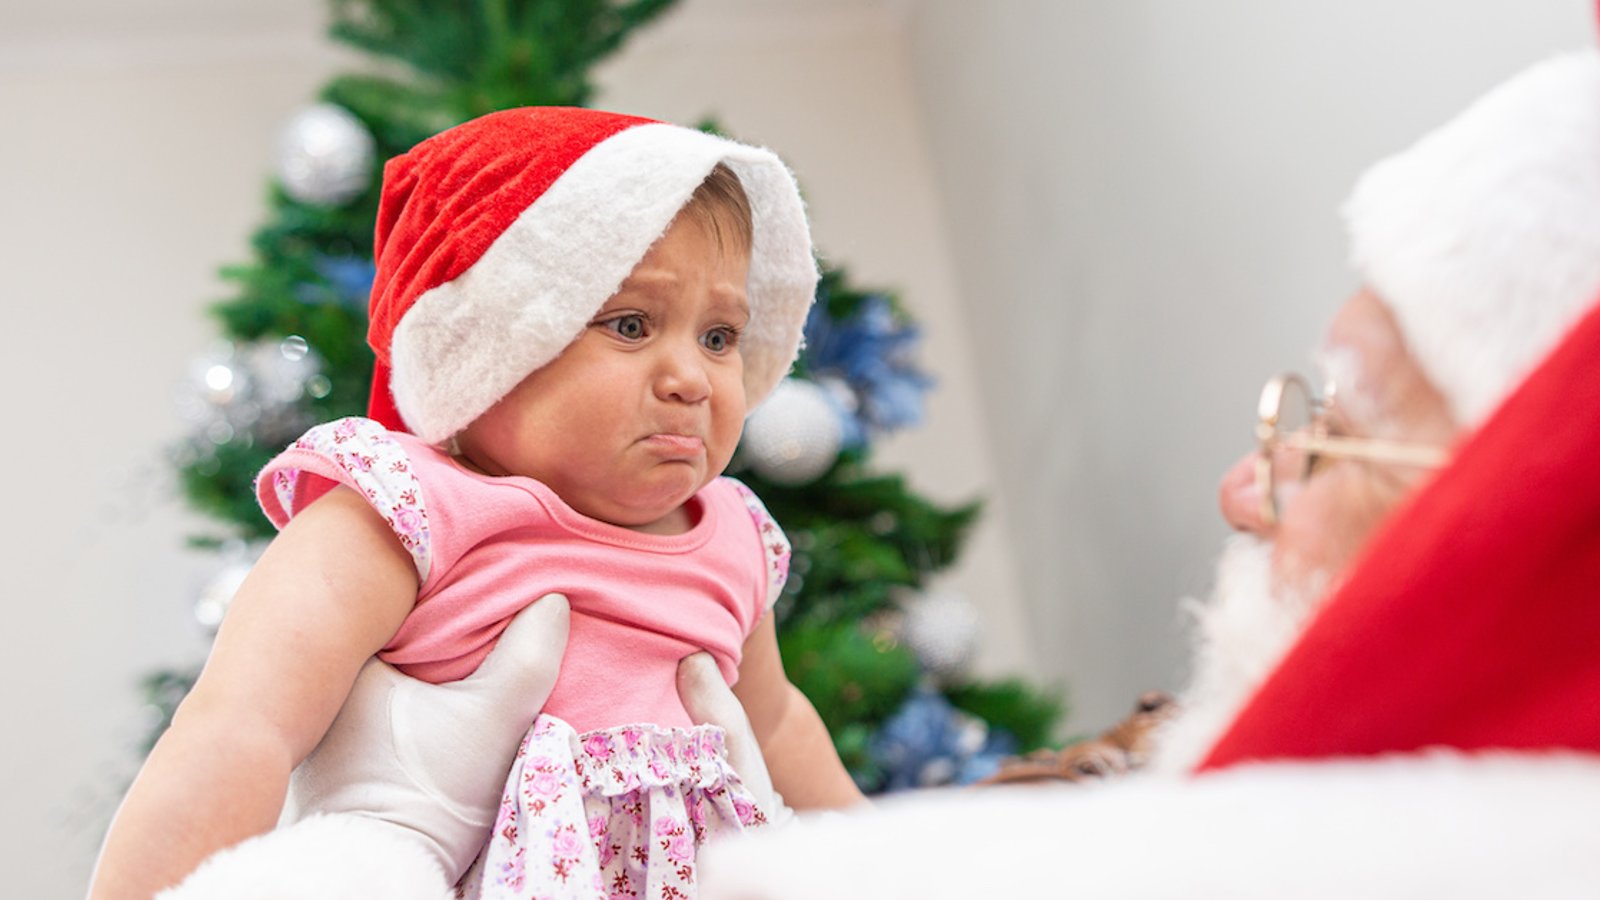 Pourquoi il ne faudrait jamais forcer un enfant à s'asseoir sur les genoux du Père Noël, selon des experts de l'enfance